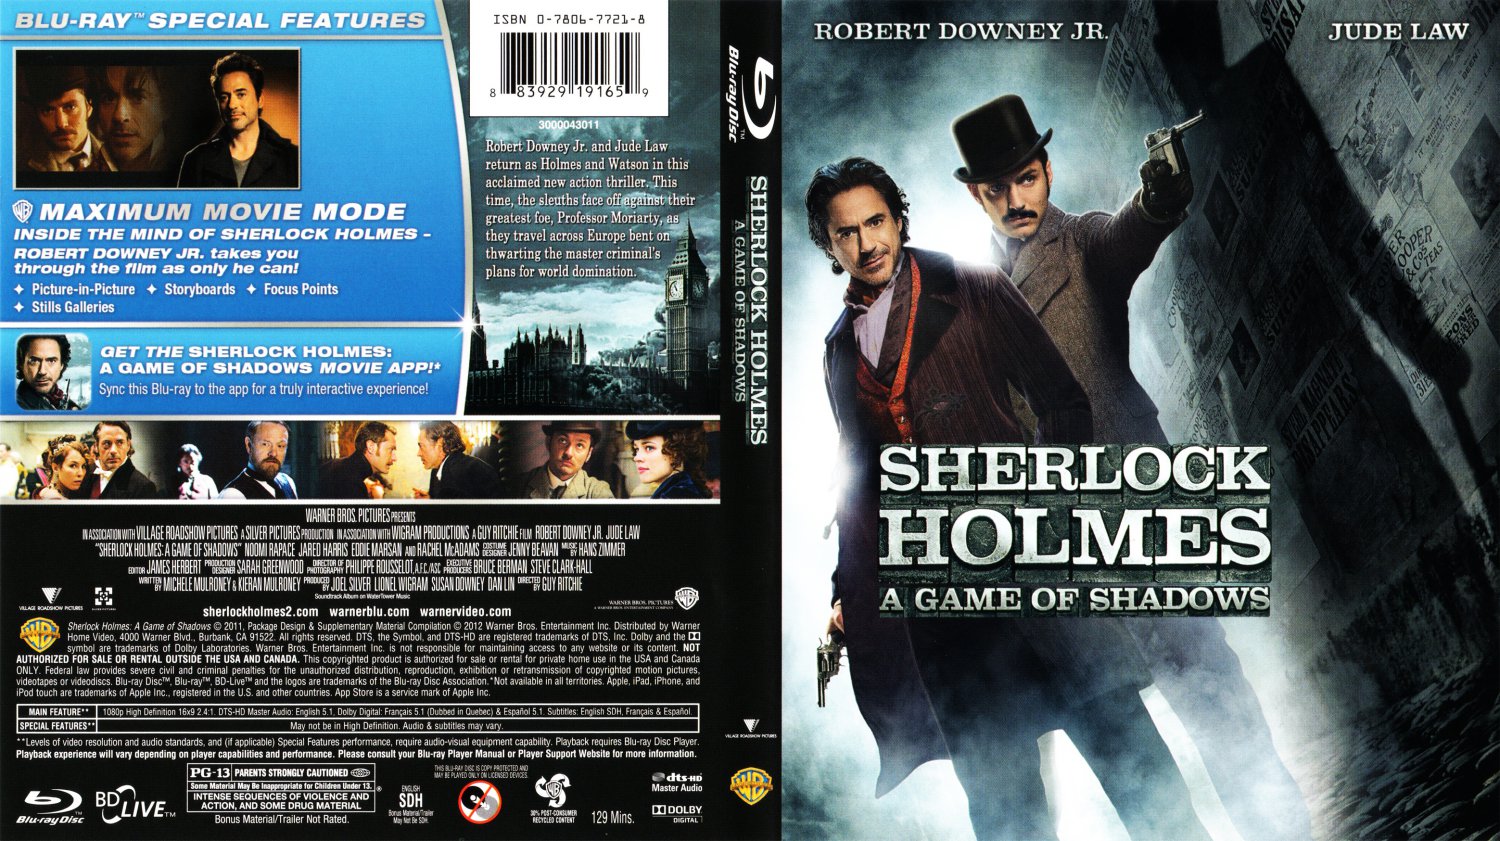 Шерлок Холмс: игра теней (DVD)